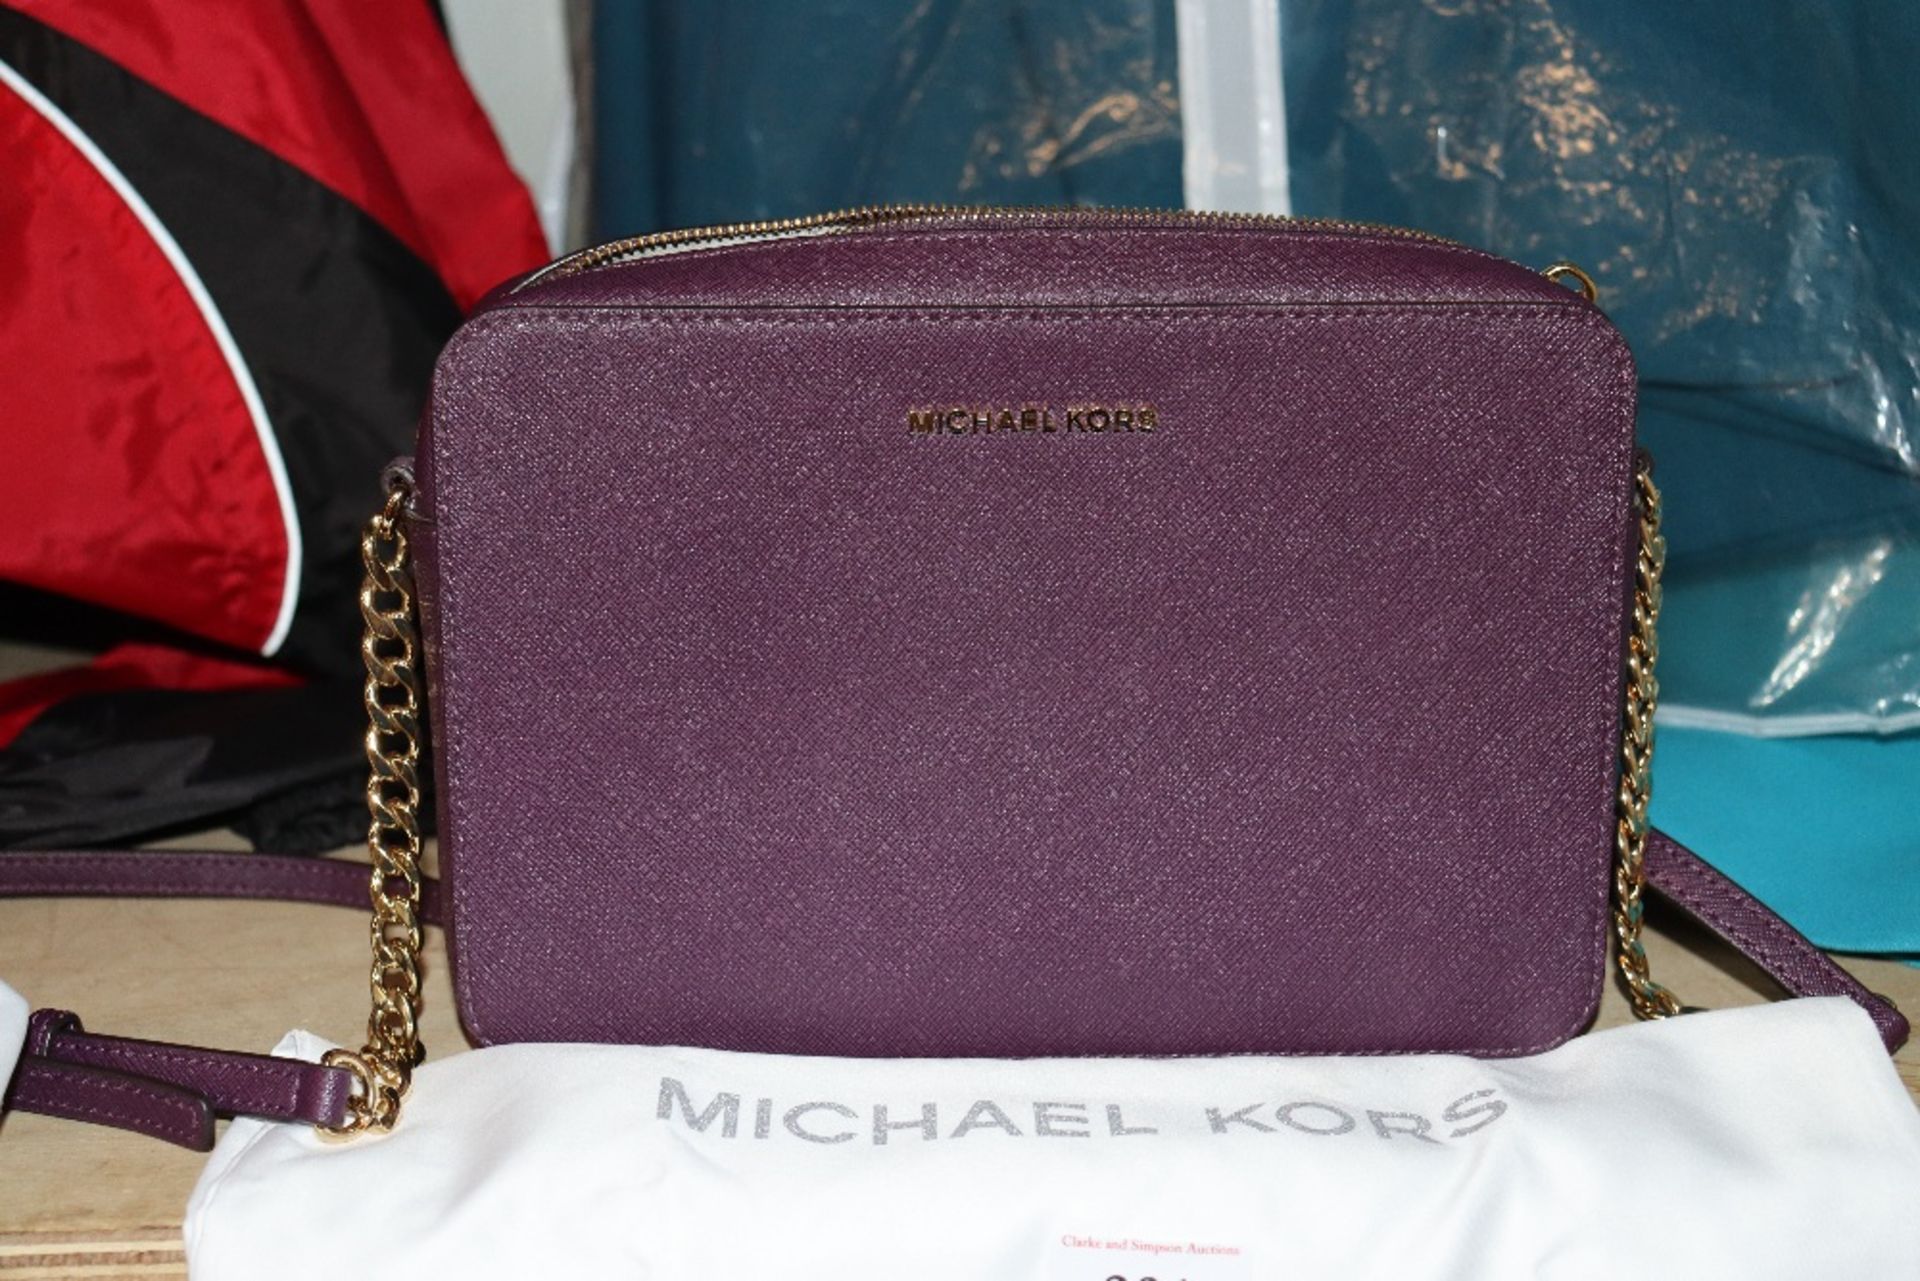 A Michael Kors purple small chain handled bag - Image 2 of 3